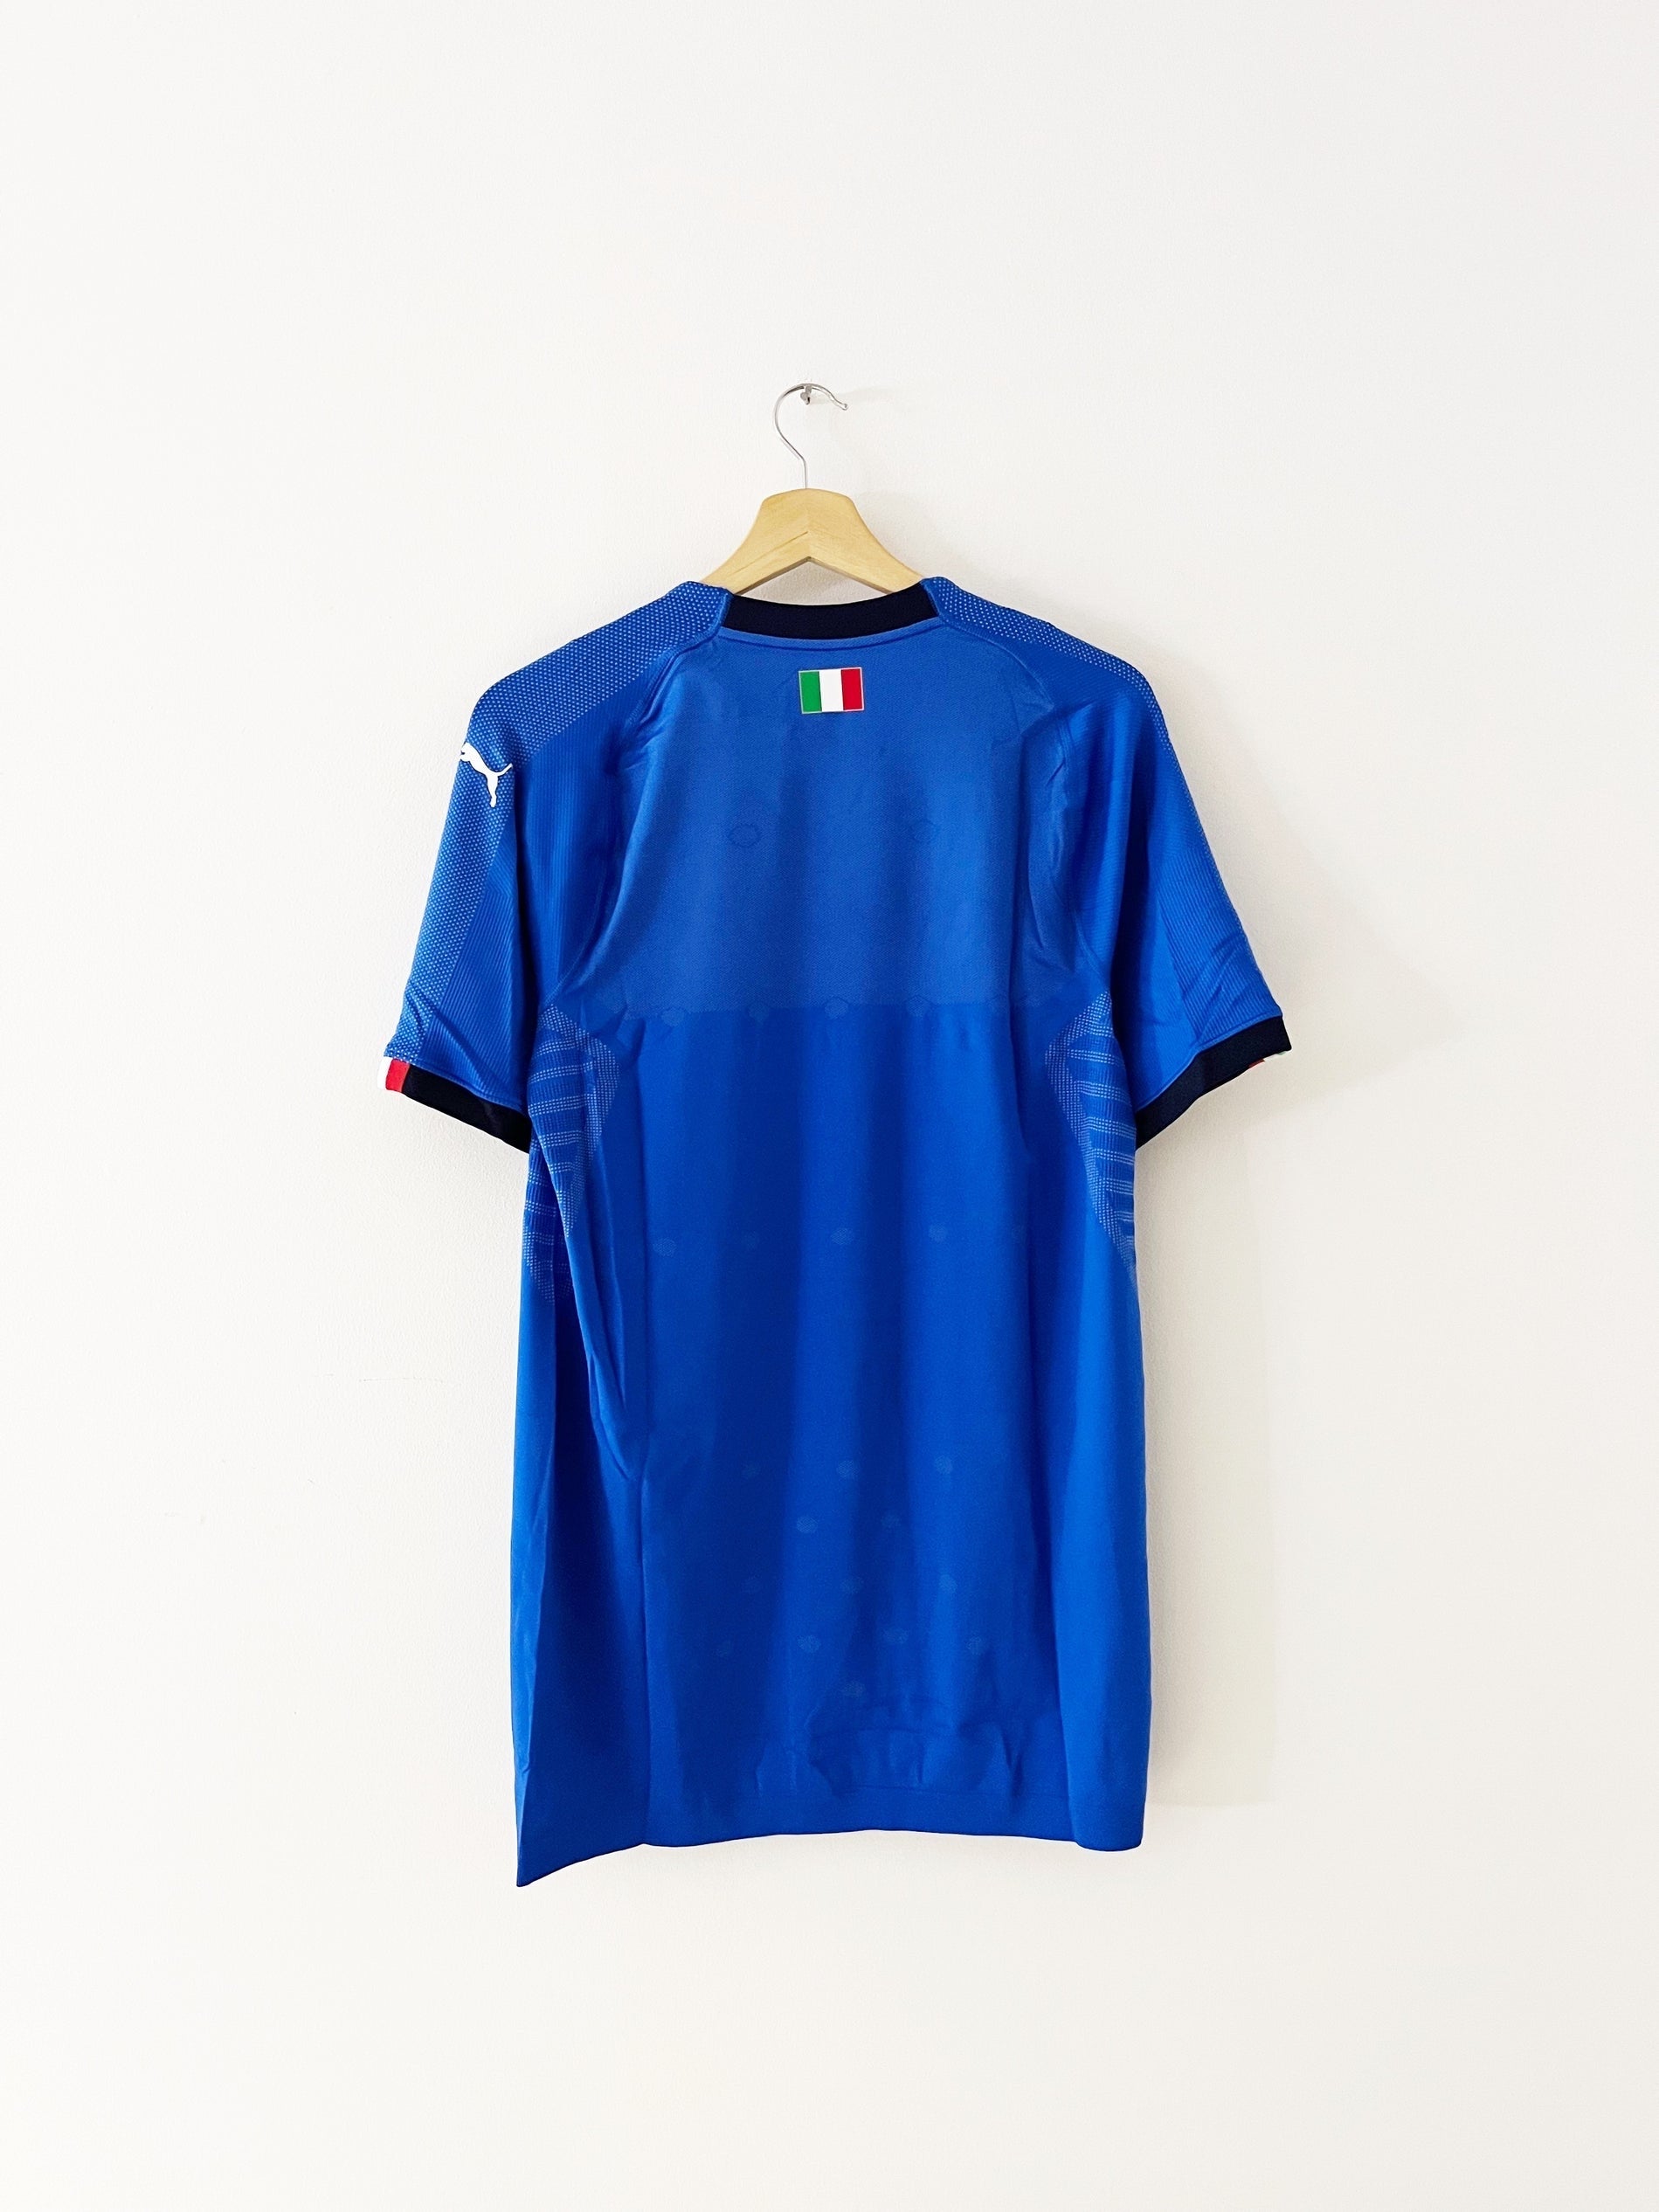 2018/19 Italy Home Shirt (XL) BNIB